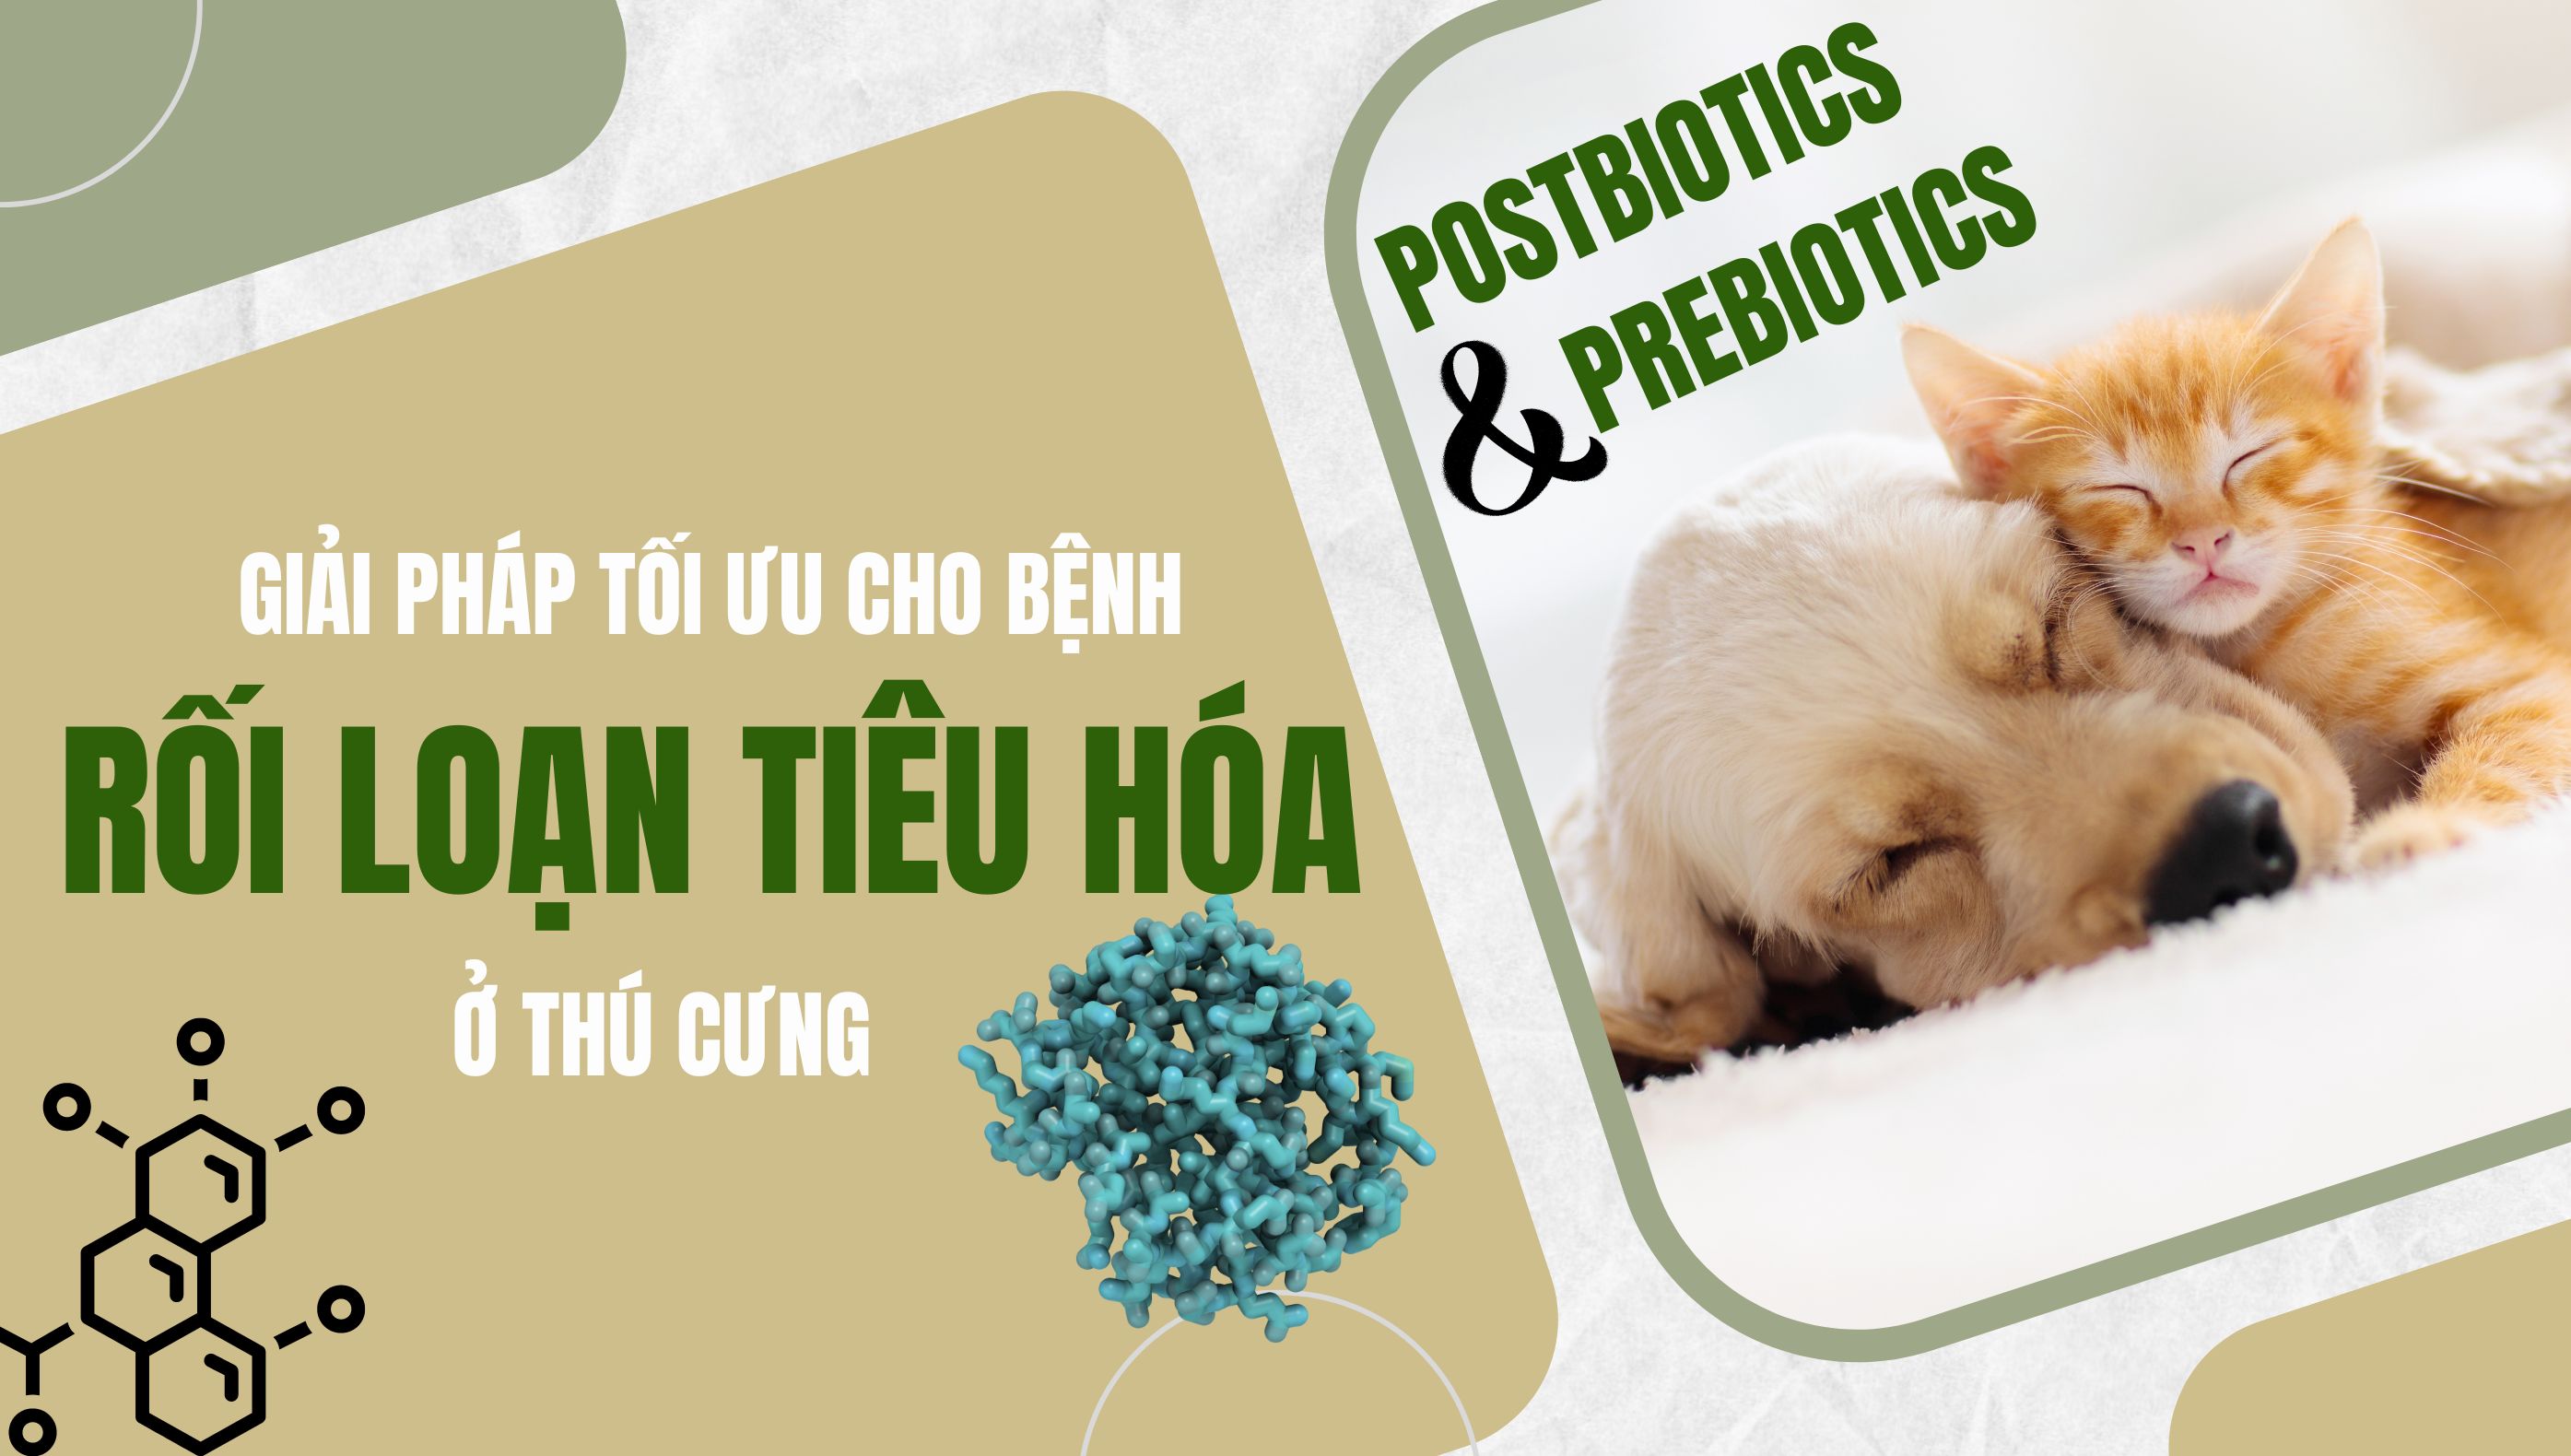 Giải pháp tối ưu cho rối loạn tiêu hóa ở thú cưng: Postbiotics và Prebiotics